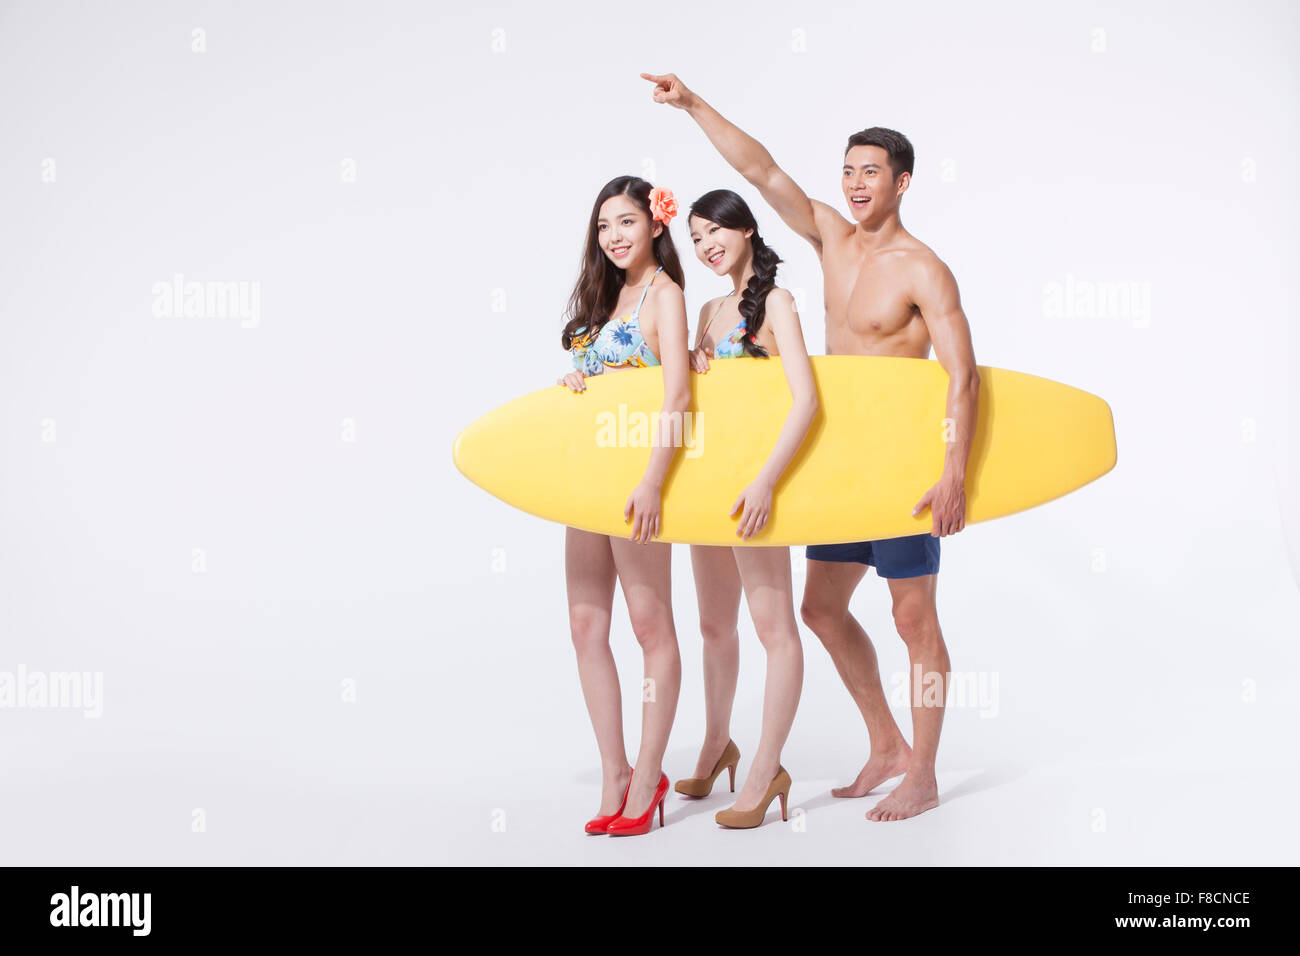 Dos mujeres en bikini y tacones y un hombre en natación pantalones la celebración de una junta de surf juntos y el hombre apuntando con el dedo. Foto de stock